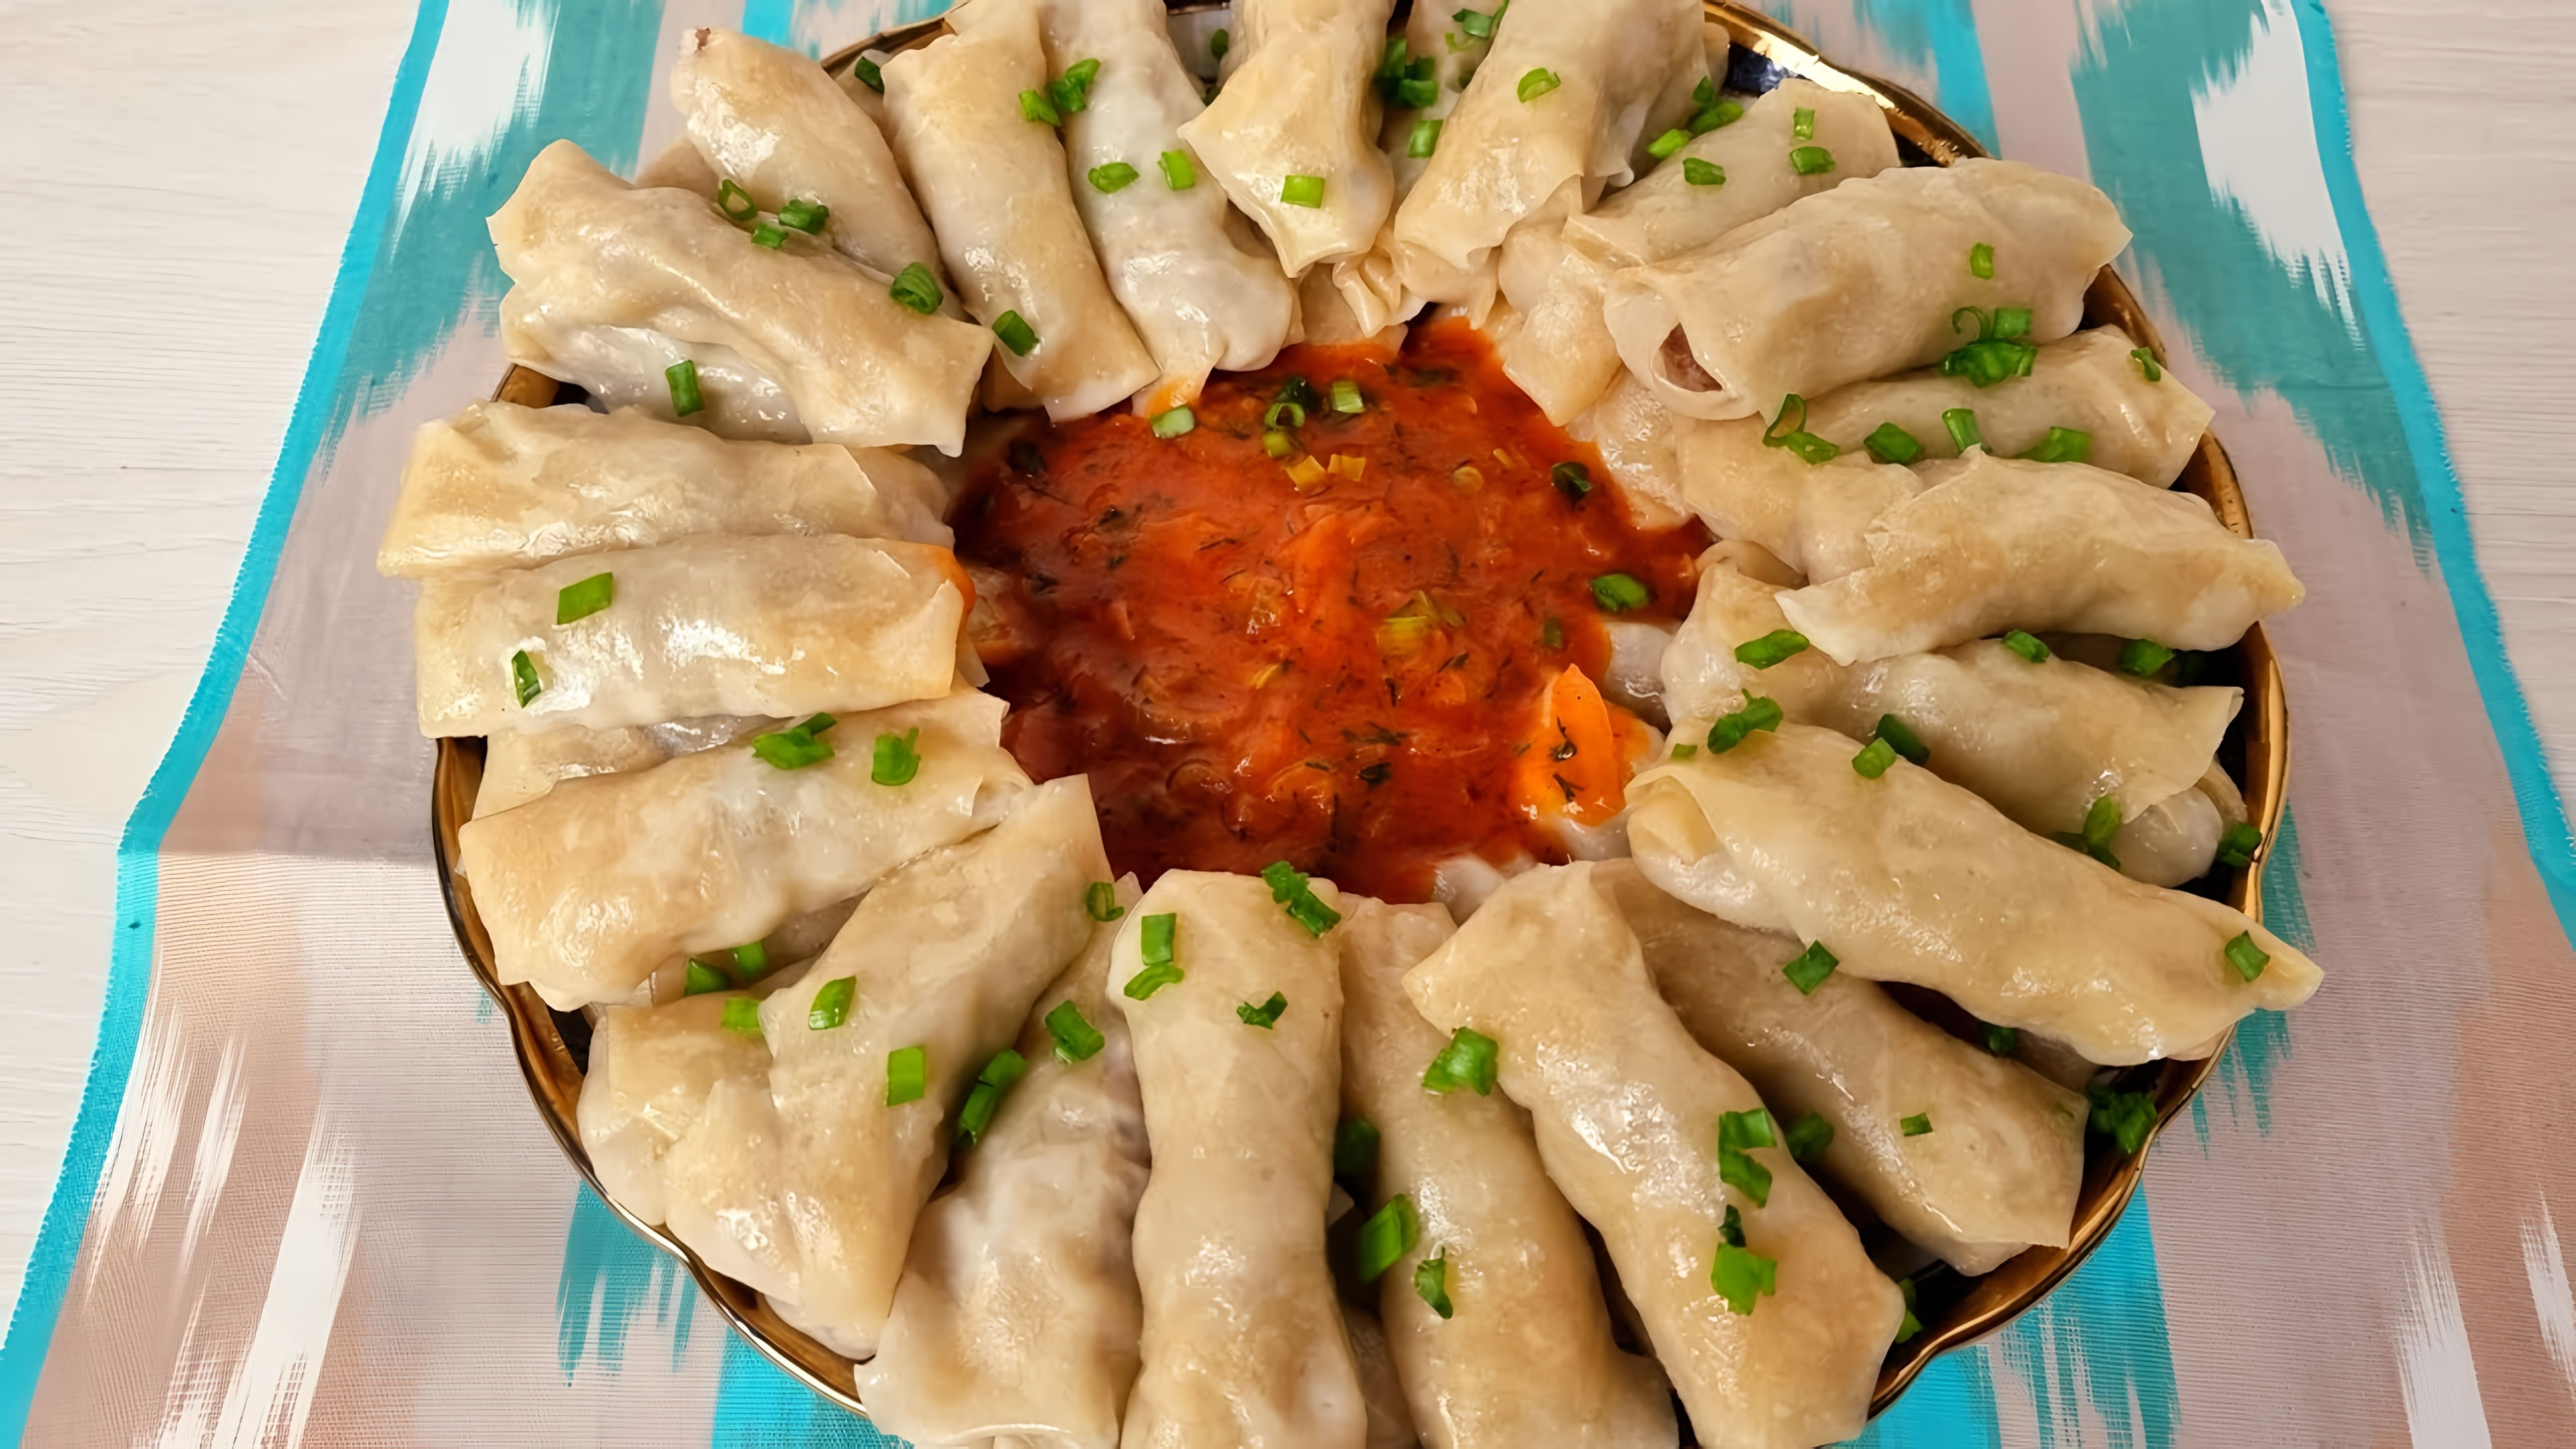 Видео рассказывает о узбекском блюде под названием чайхана узбечка, которое представляет собой начиненное тесто